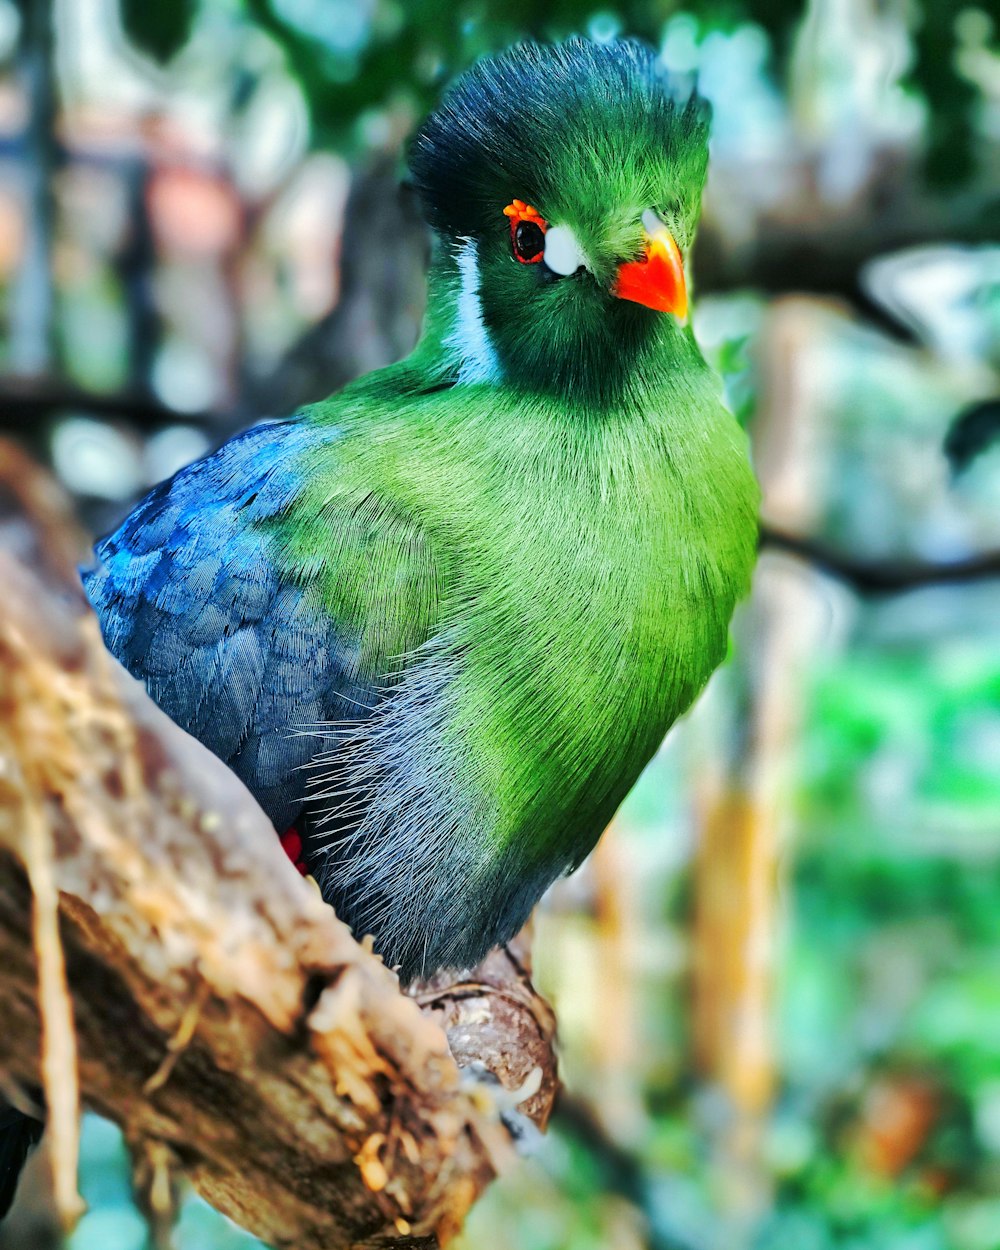 茶色の木の枝にとまる緑の鳥のセレクティブフォーカス写真